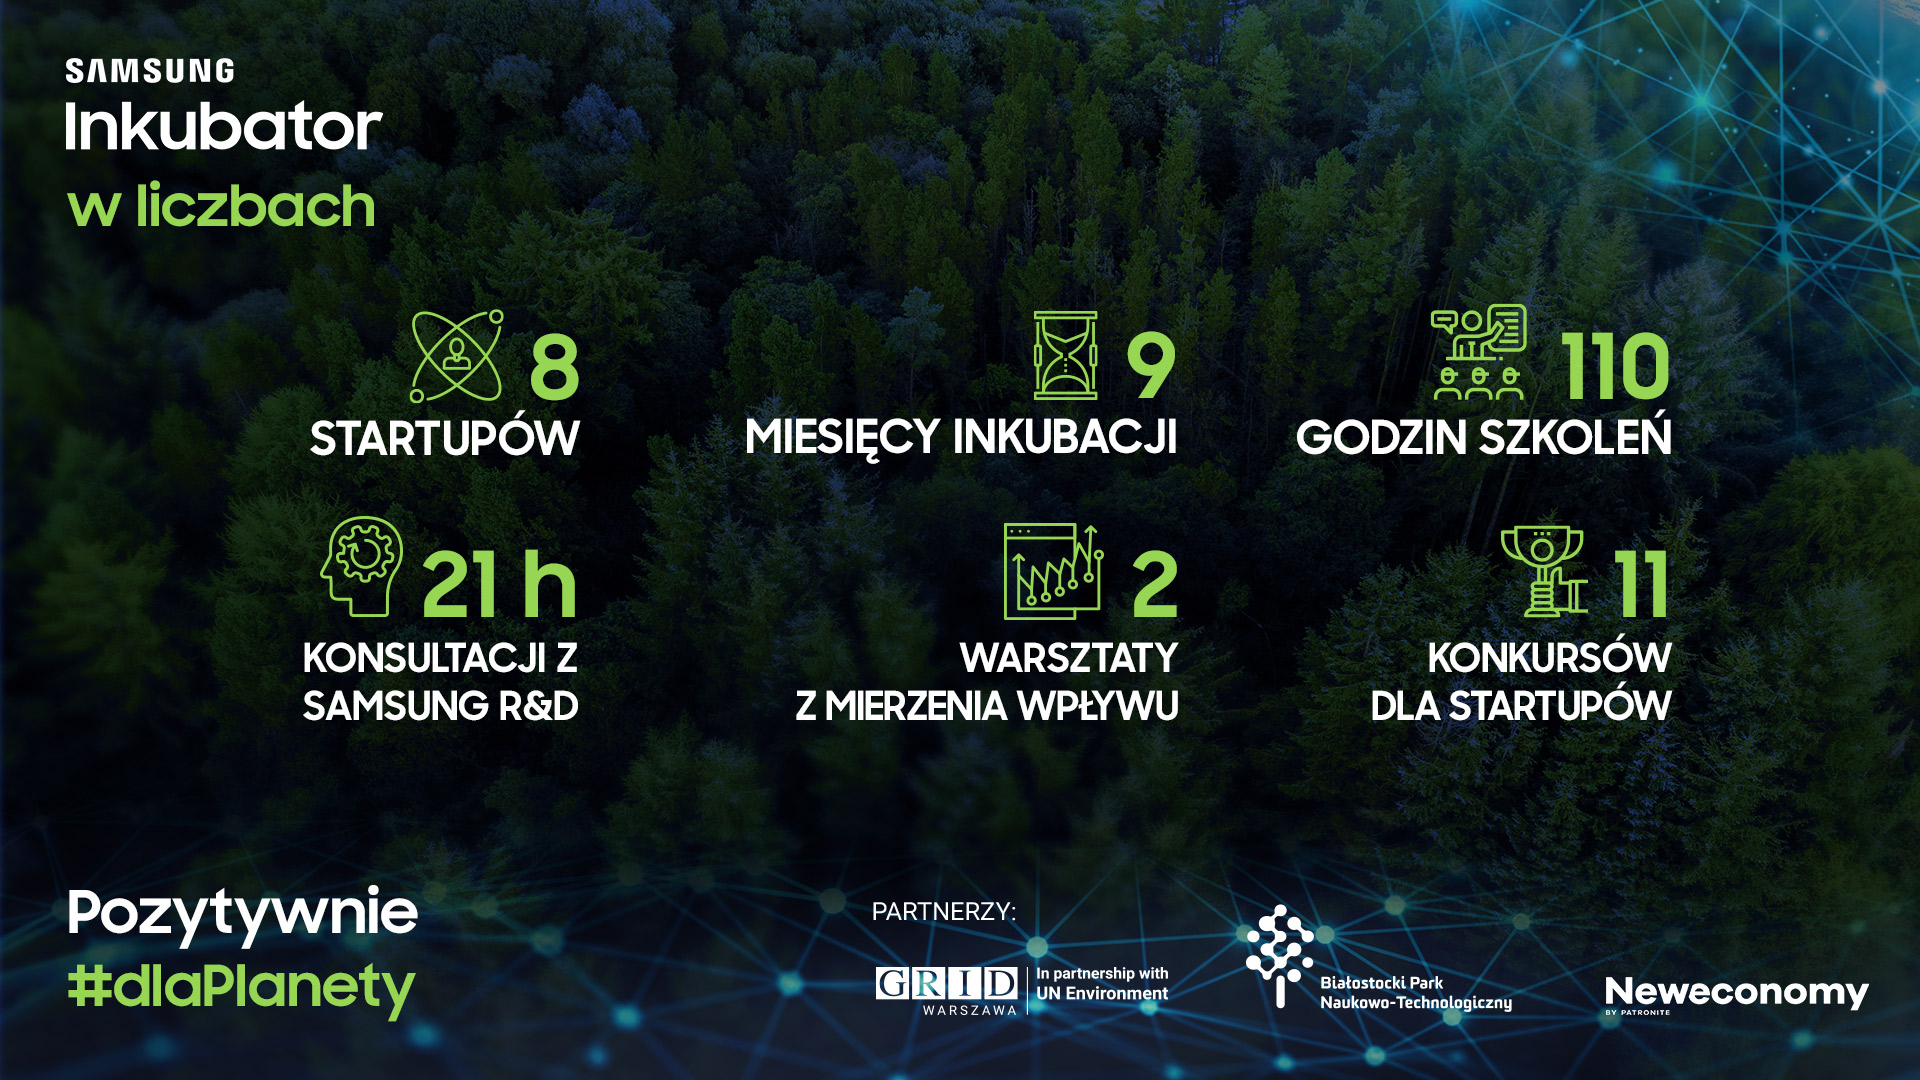 Polskie startupy wiedzą jak pomóc światu – Podsumowanie I edycji Samsung Inkubator #dlaPlanety